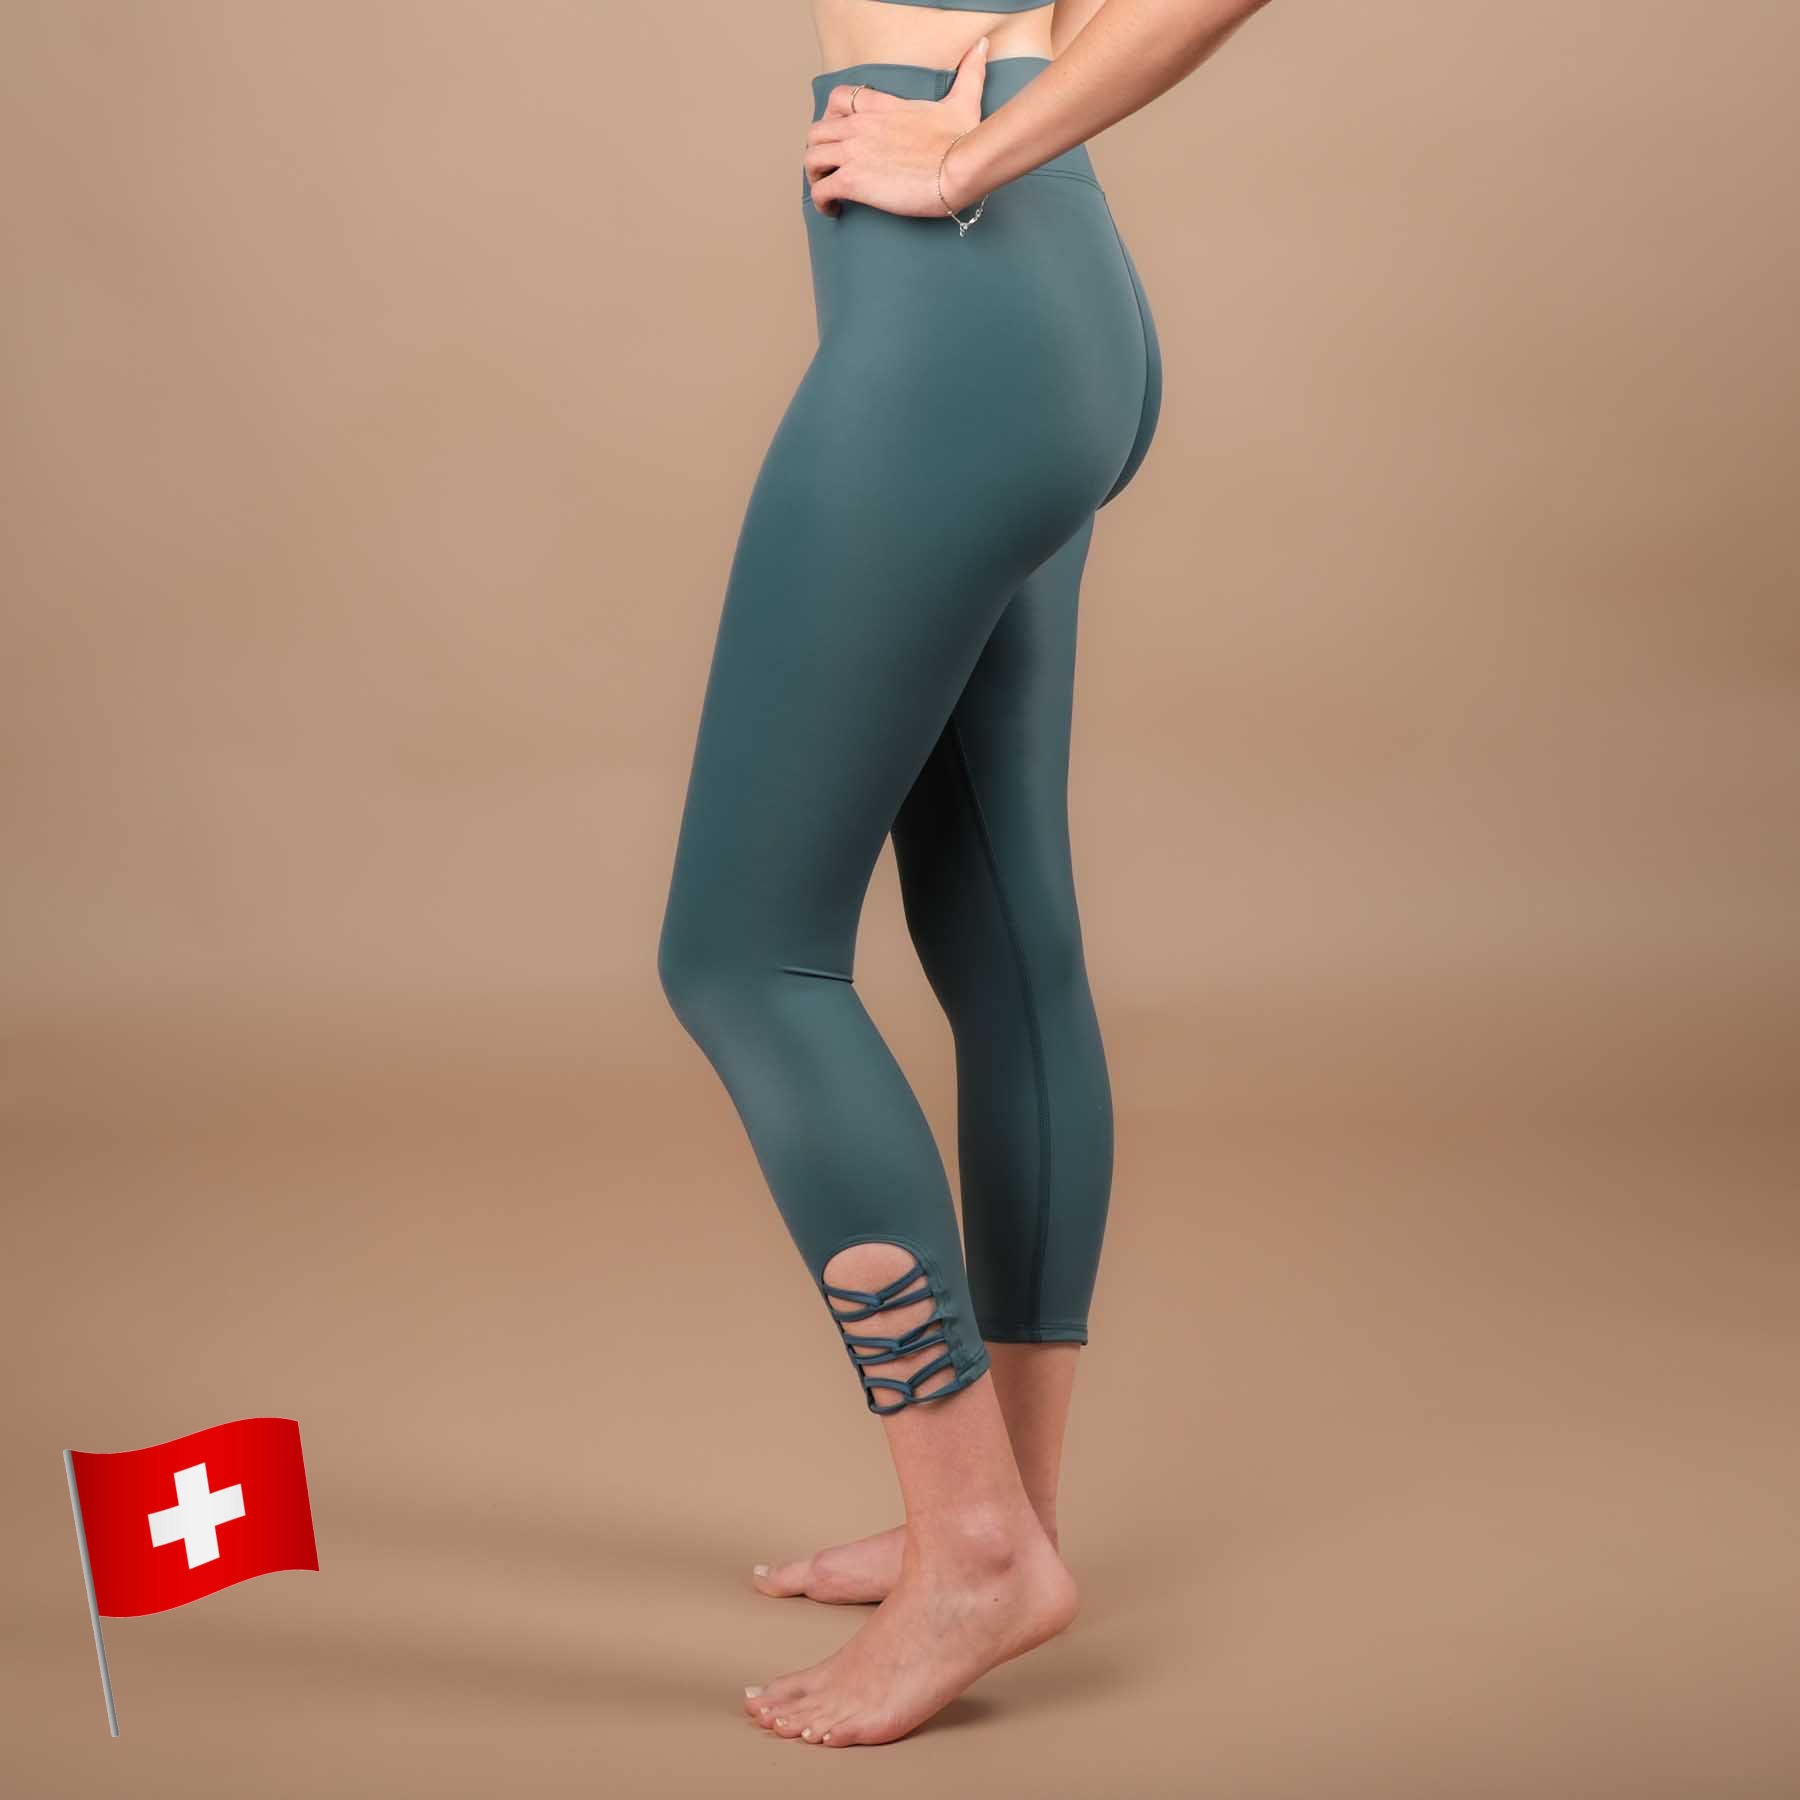 Yoga Leggings 7/8 Eco Mare in der Schweiz hergestellt aus recyceltem Econyl Stoff amazonas-gruen